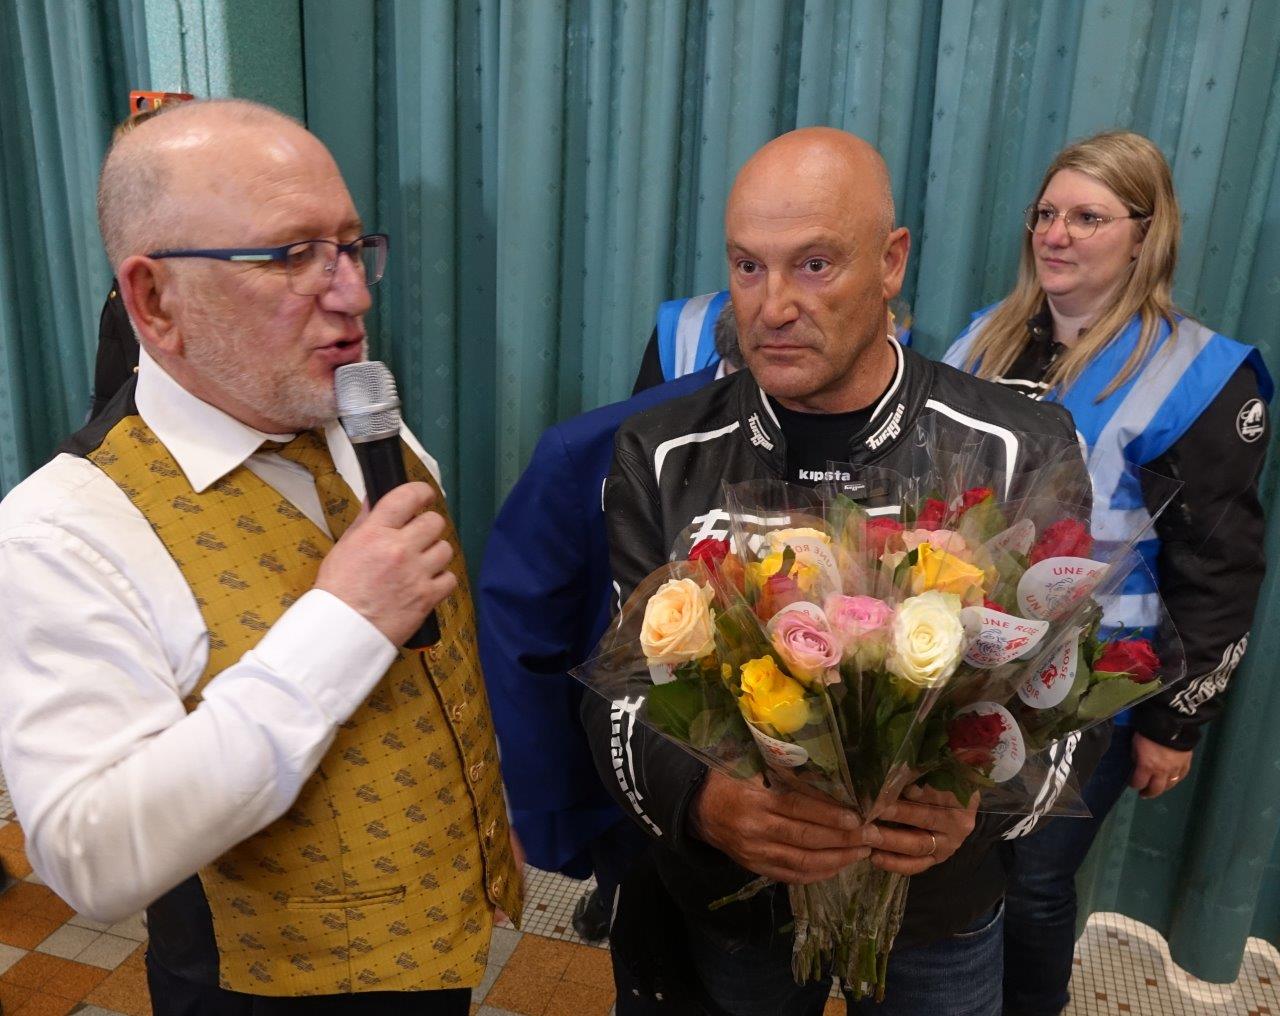 Le président de la Musique municipale Didier Delionnet accueille les motards à l'issue du concert.